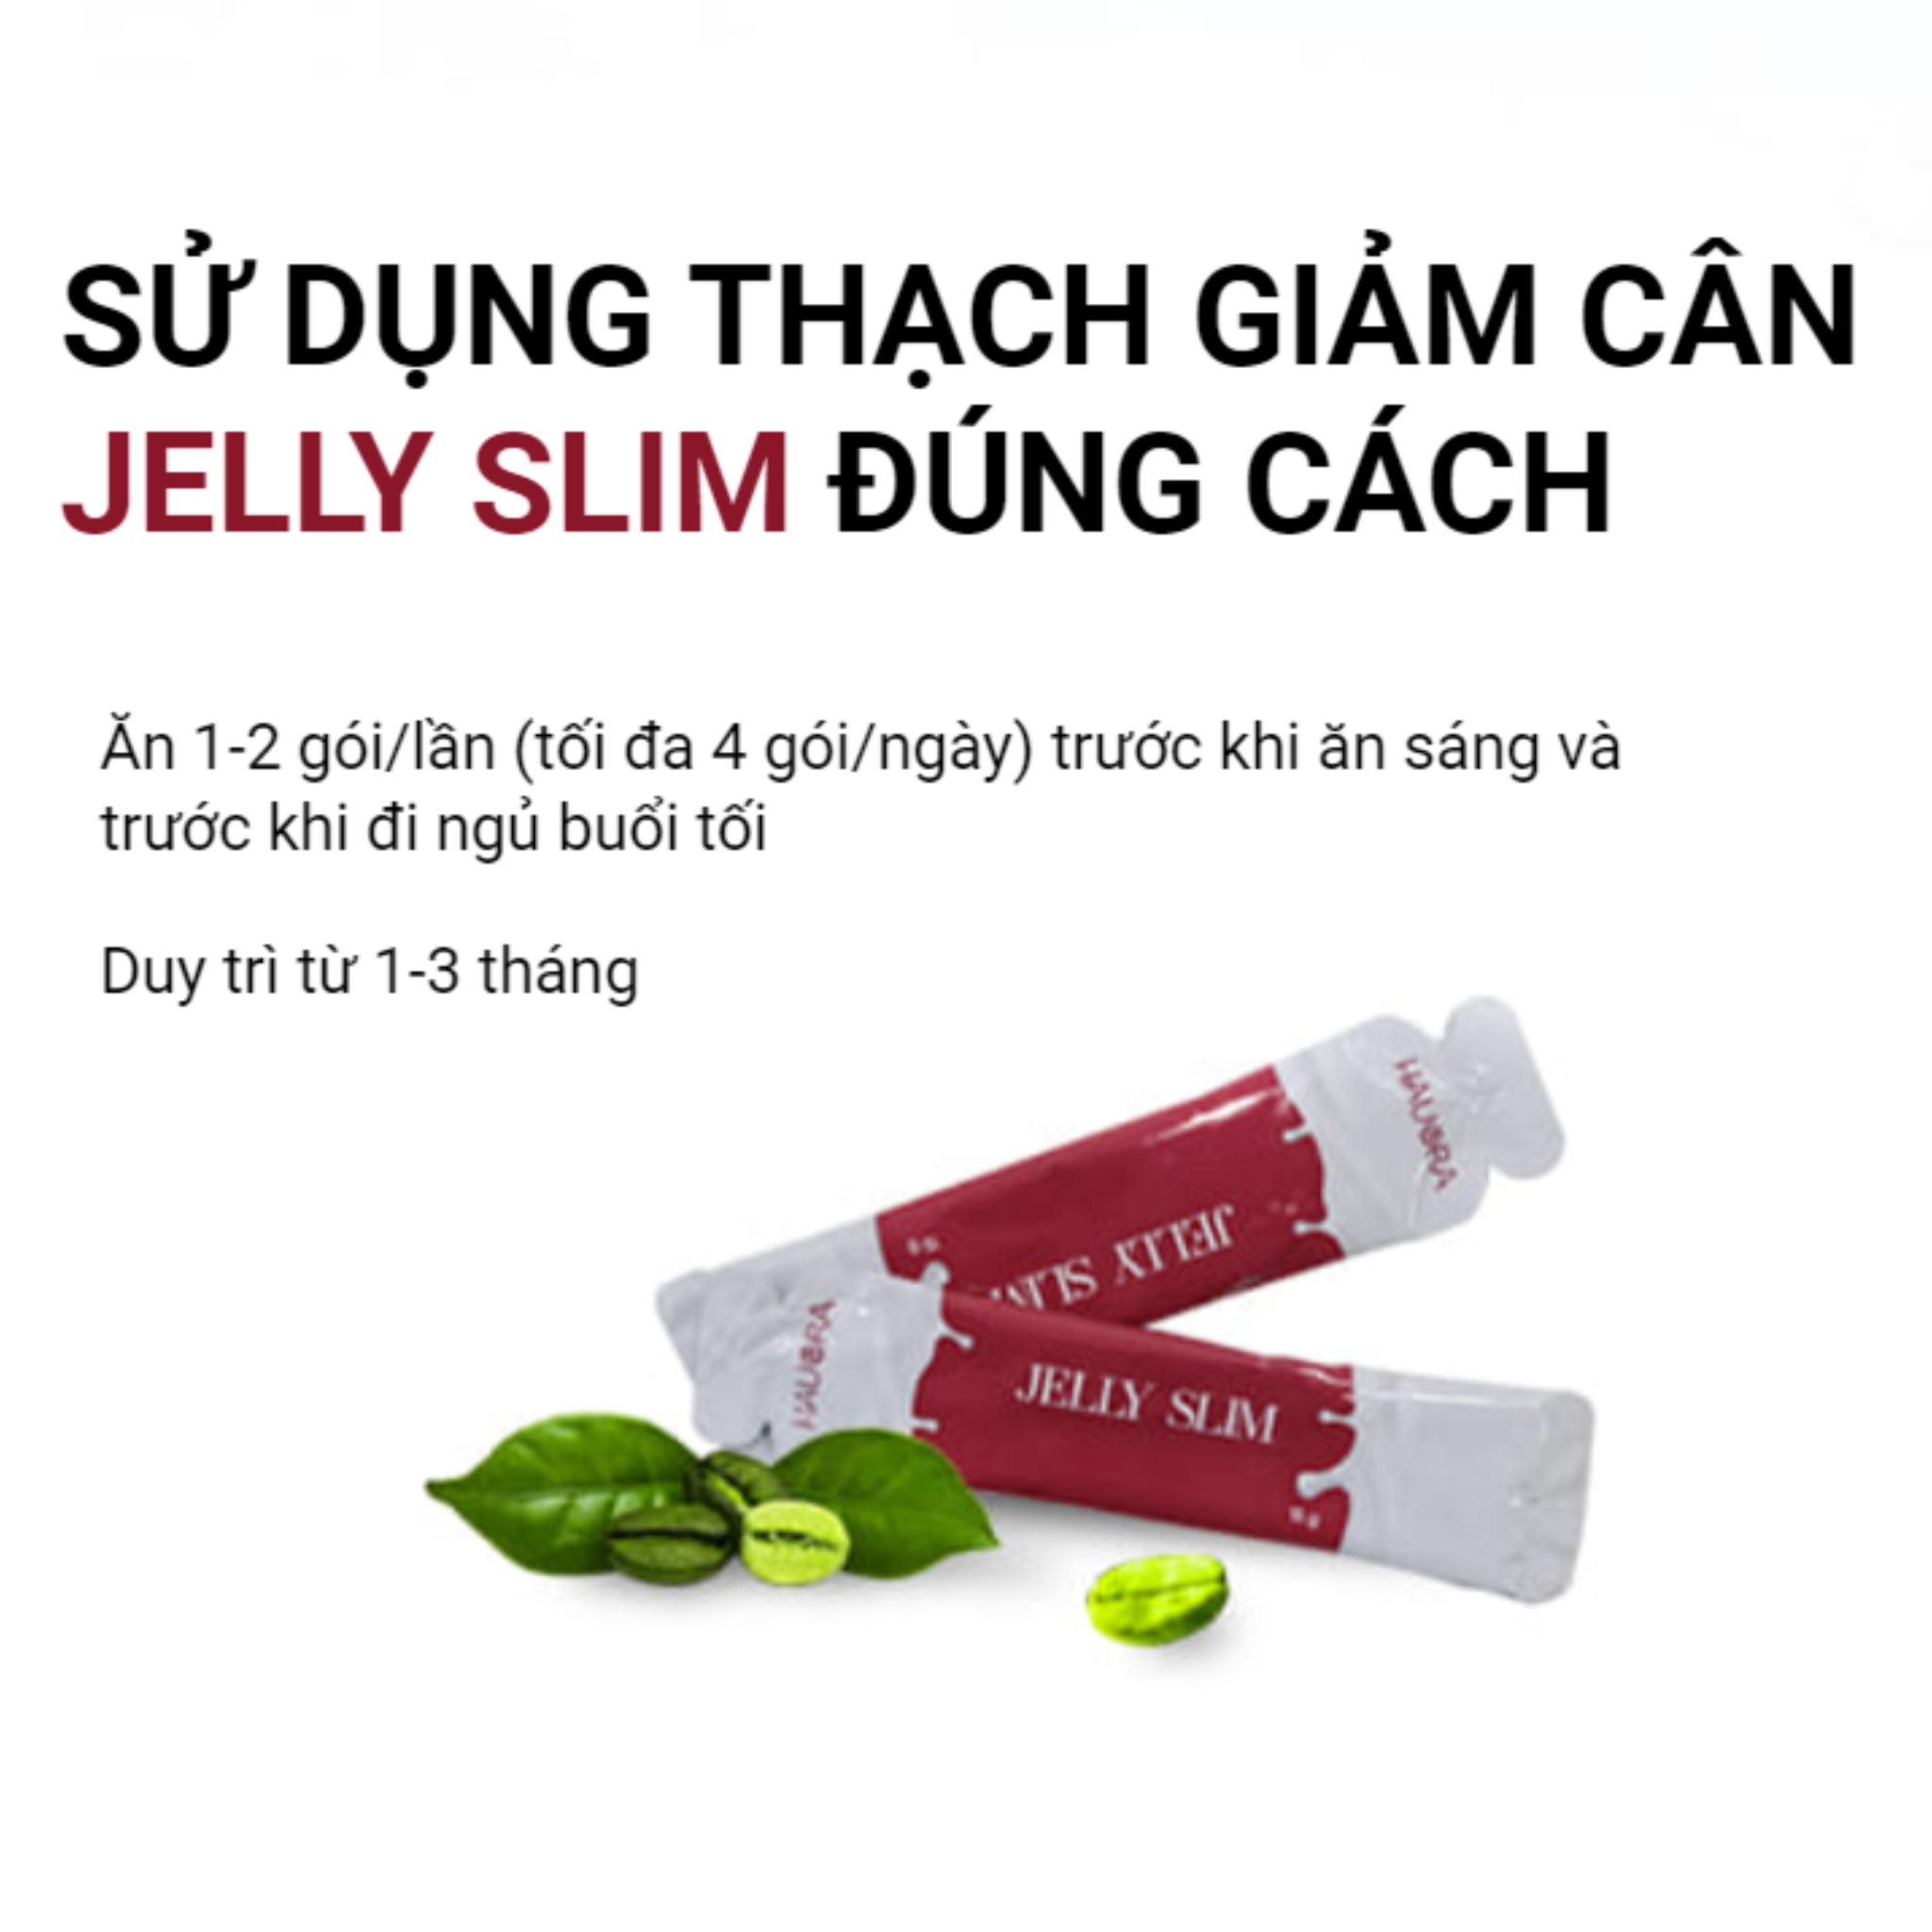 Cách sử dụng của sản phẩm Jelly Slim